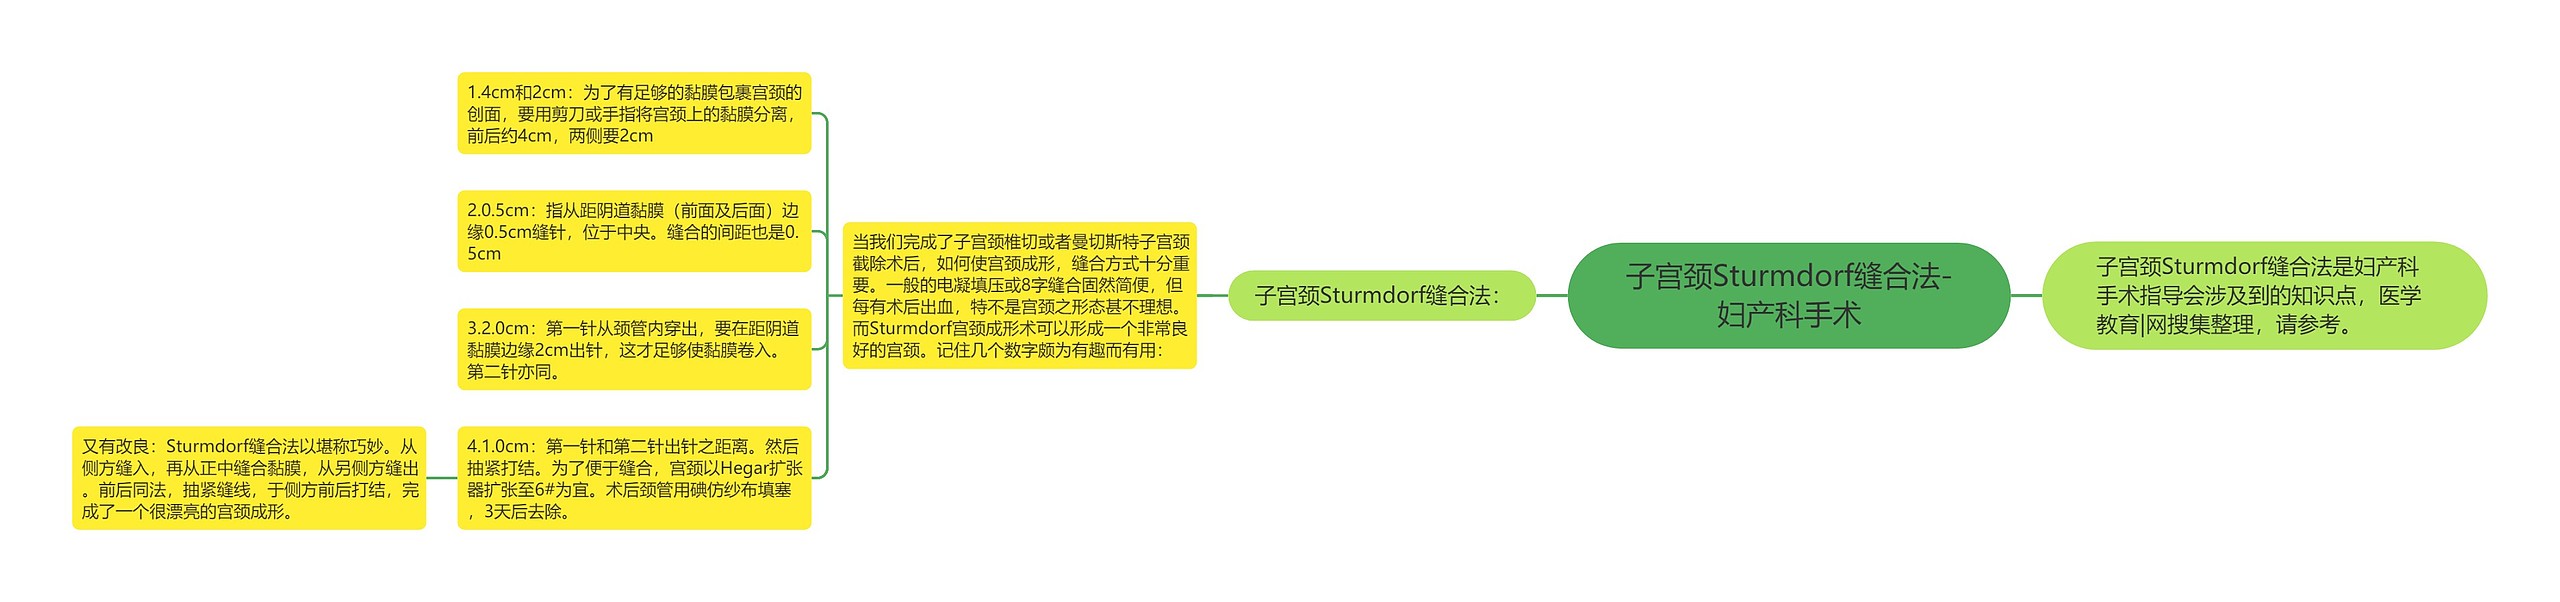 子宫颈Sturmdorf缝合法-妇产科手术思维导图